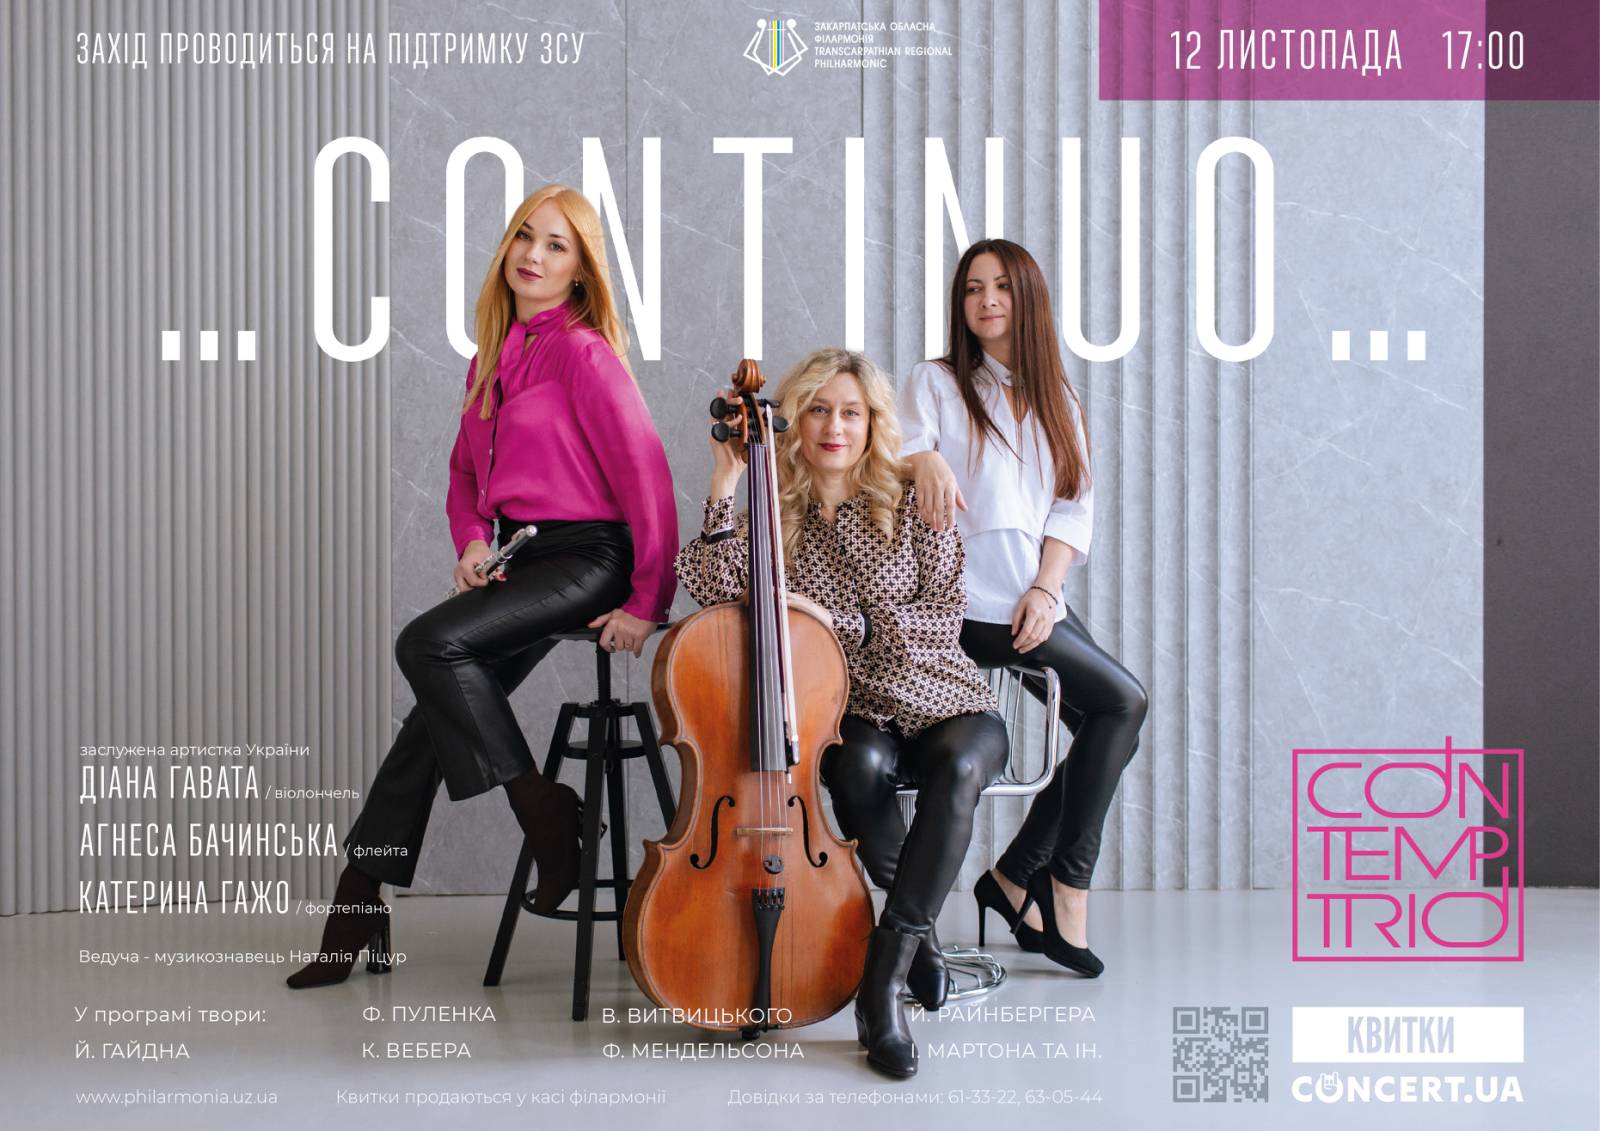 В Ужгороді "Con-temp trio" запрошує на святковий концерт "Continuo"